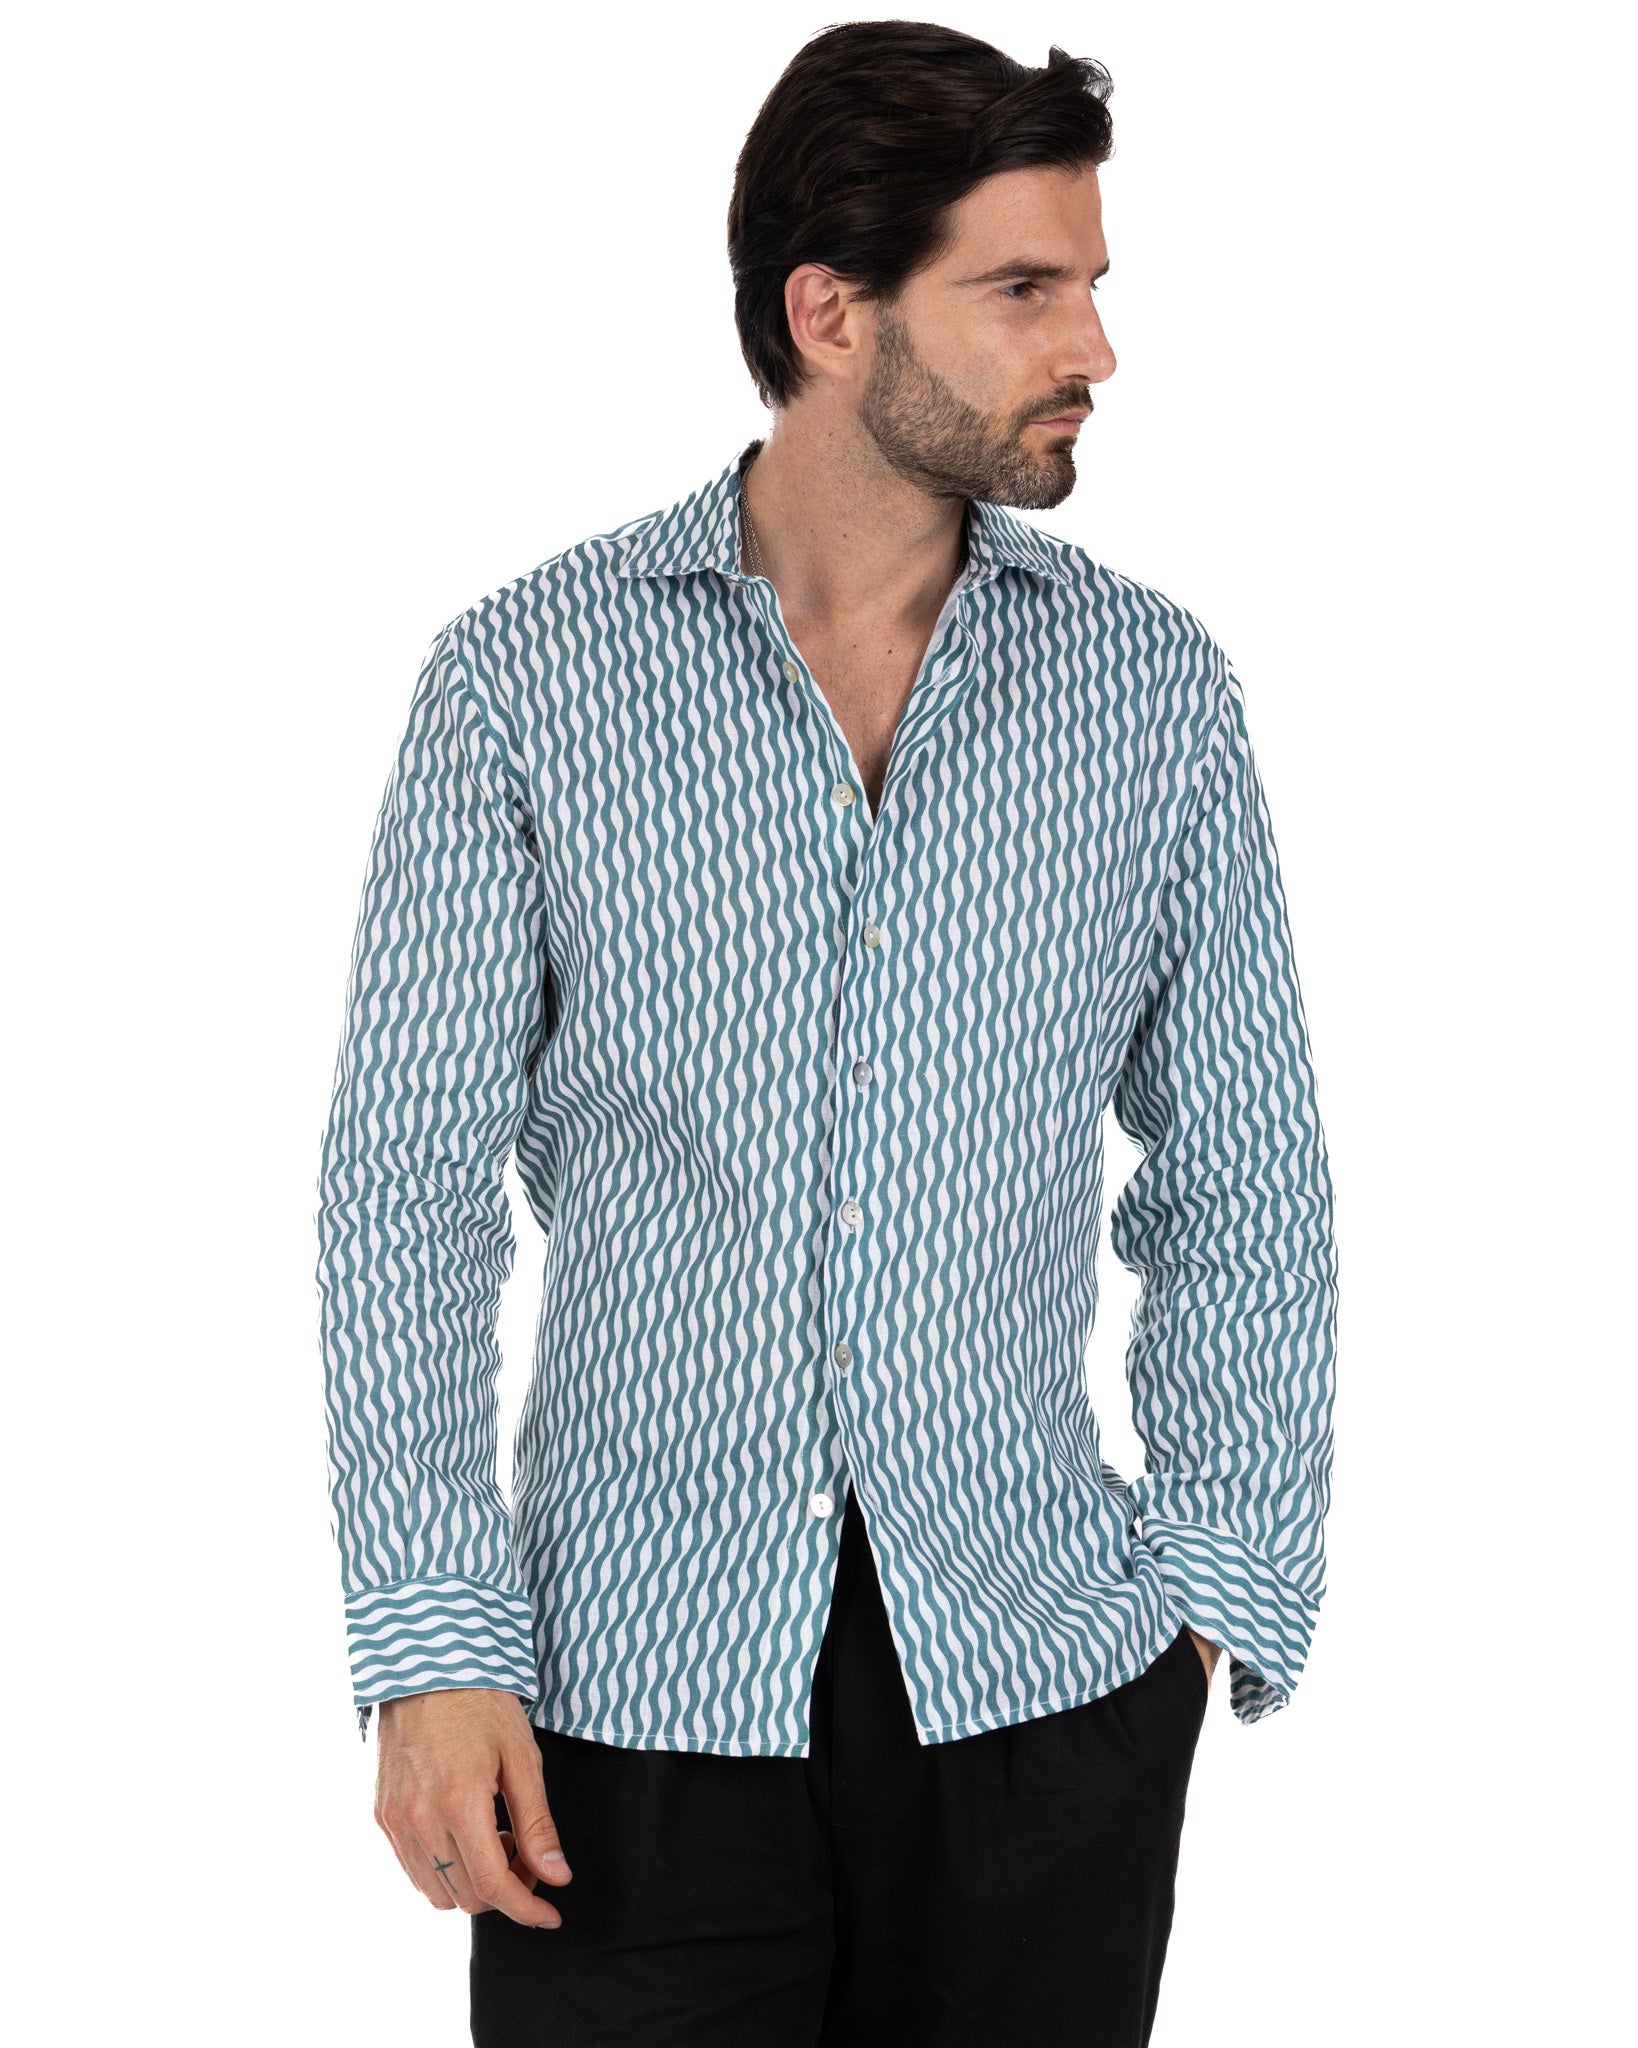 Onda - chemise en lin imprimé turquoise